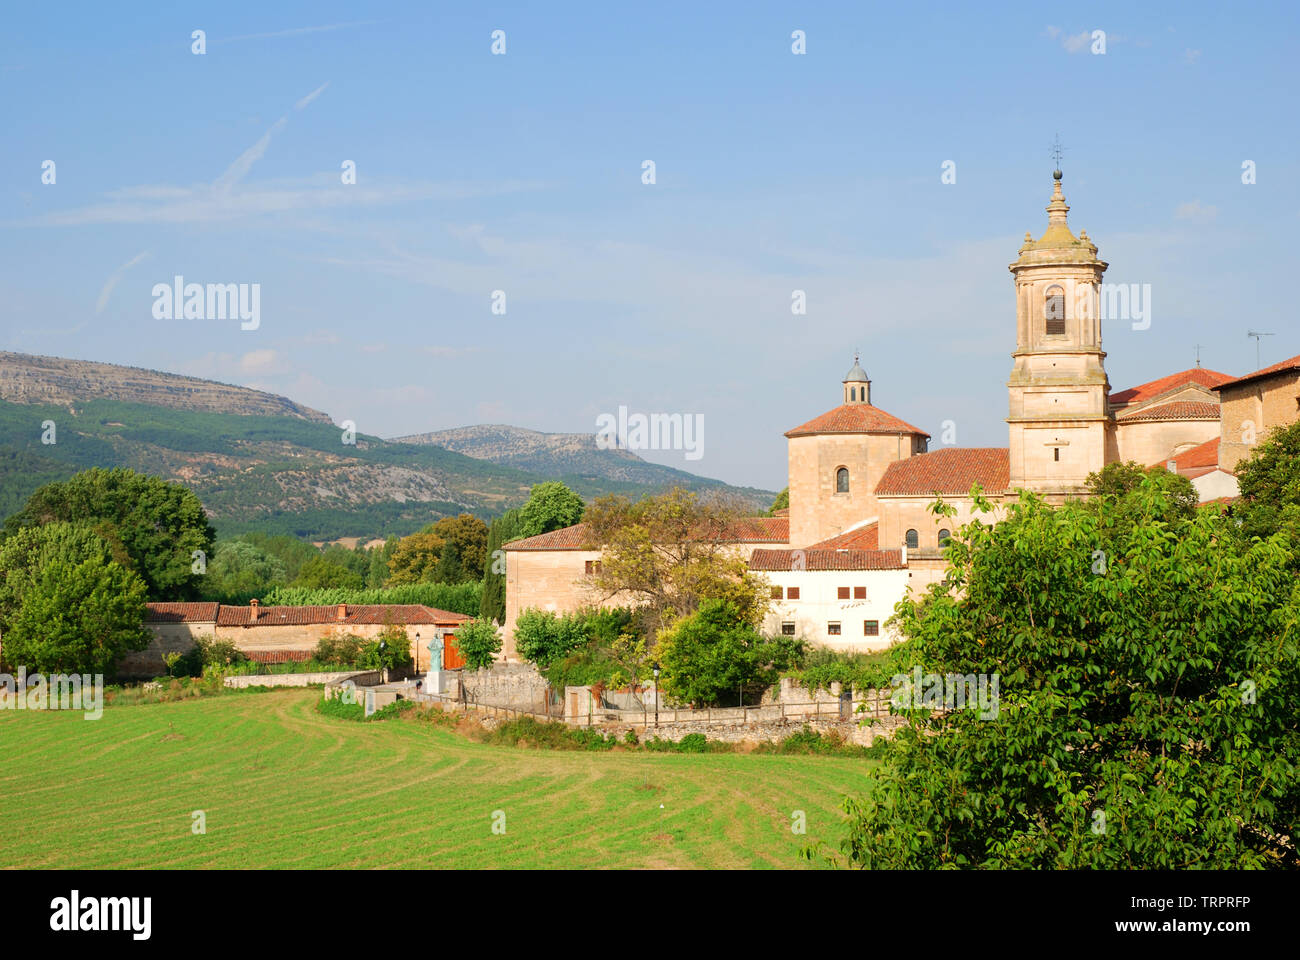 Santo Domingo de Silos, Burgos province, Castilla Leon, Spain. Stock Photo